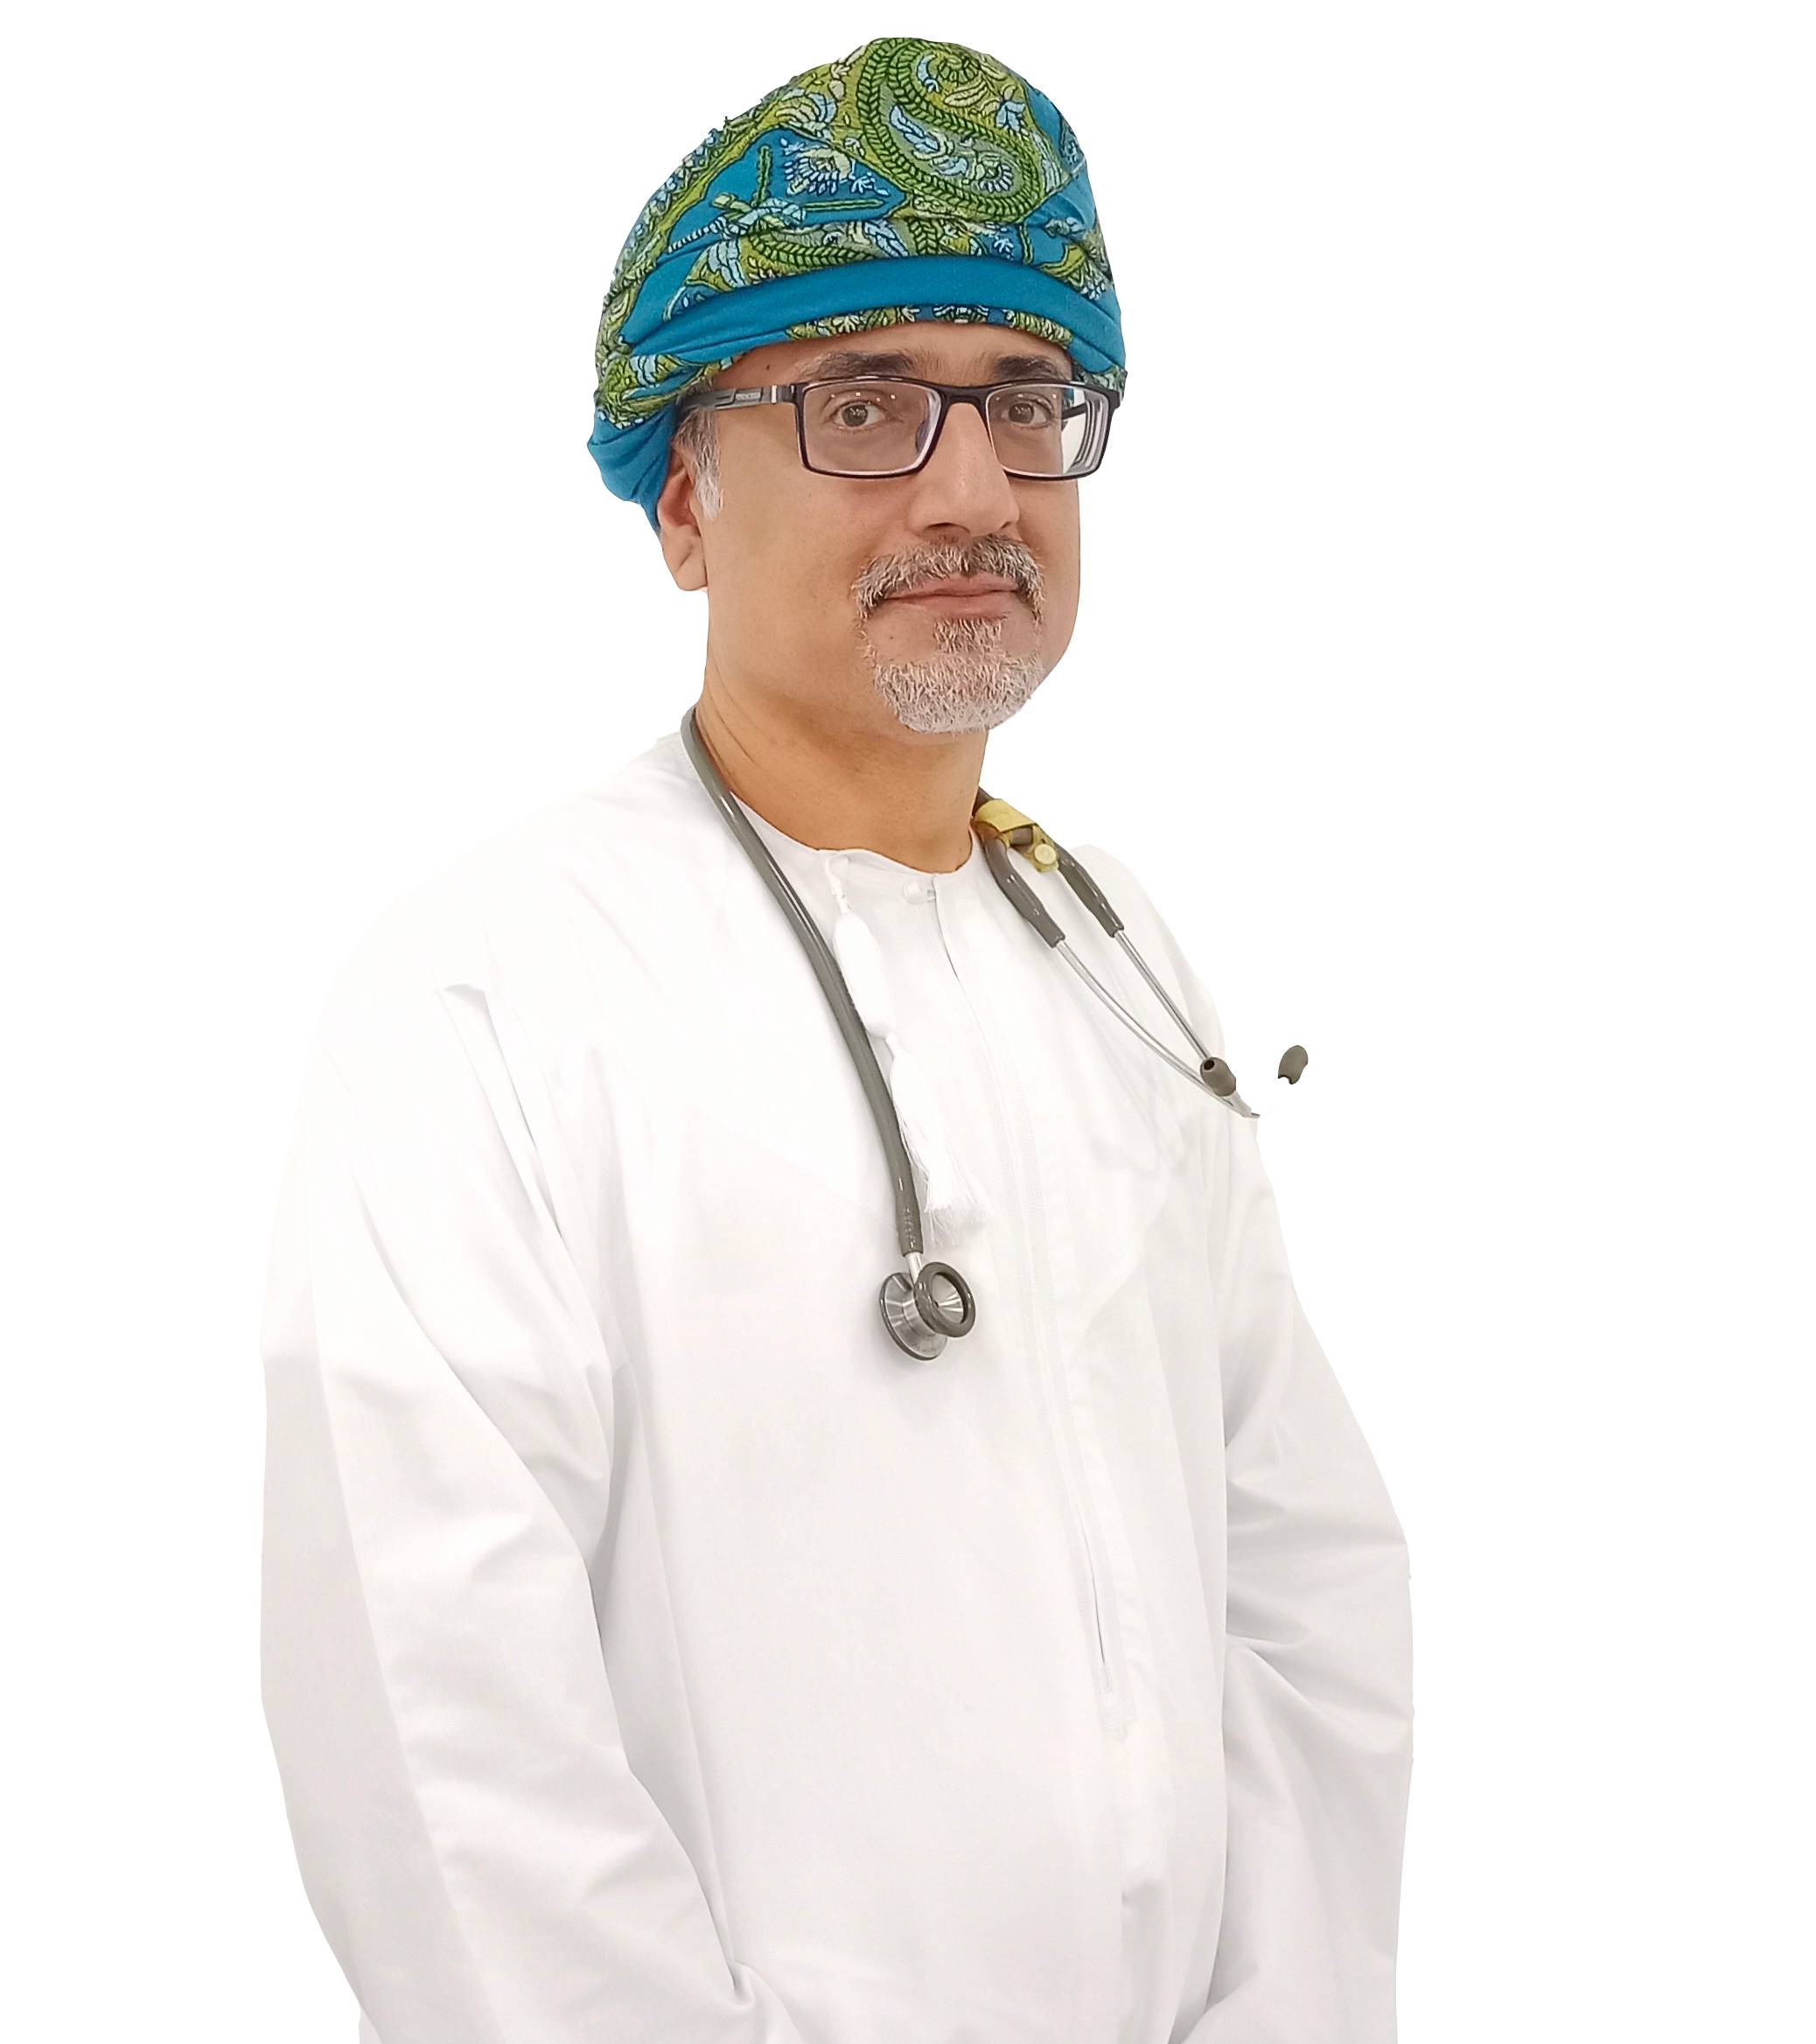 Dr Ala Mustafa Mohamed